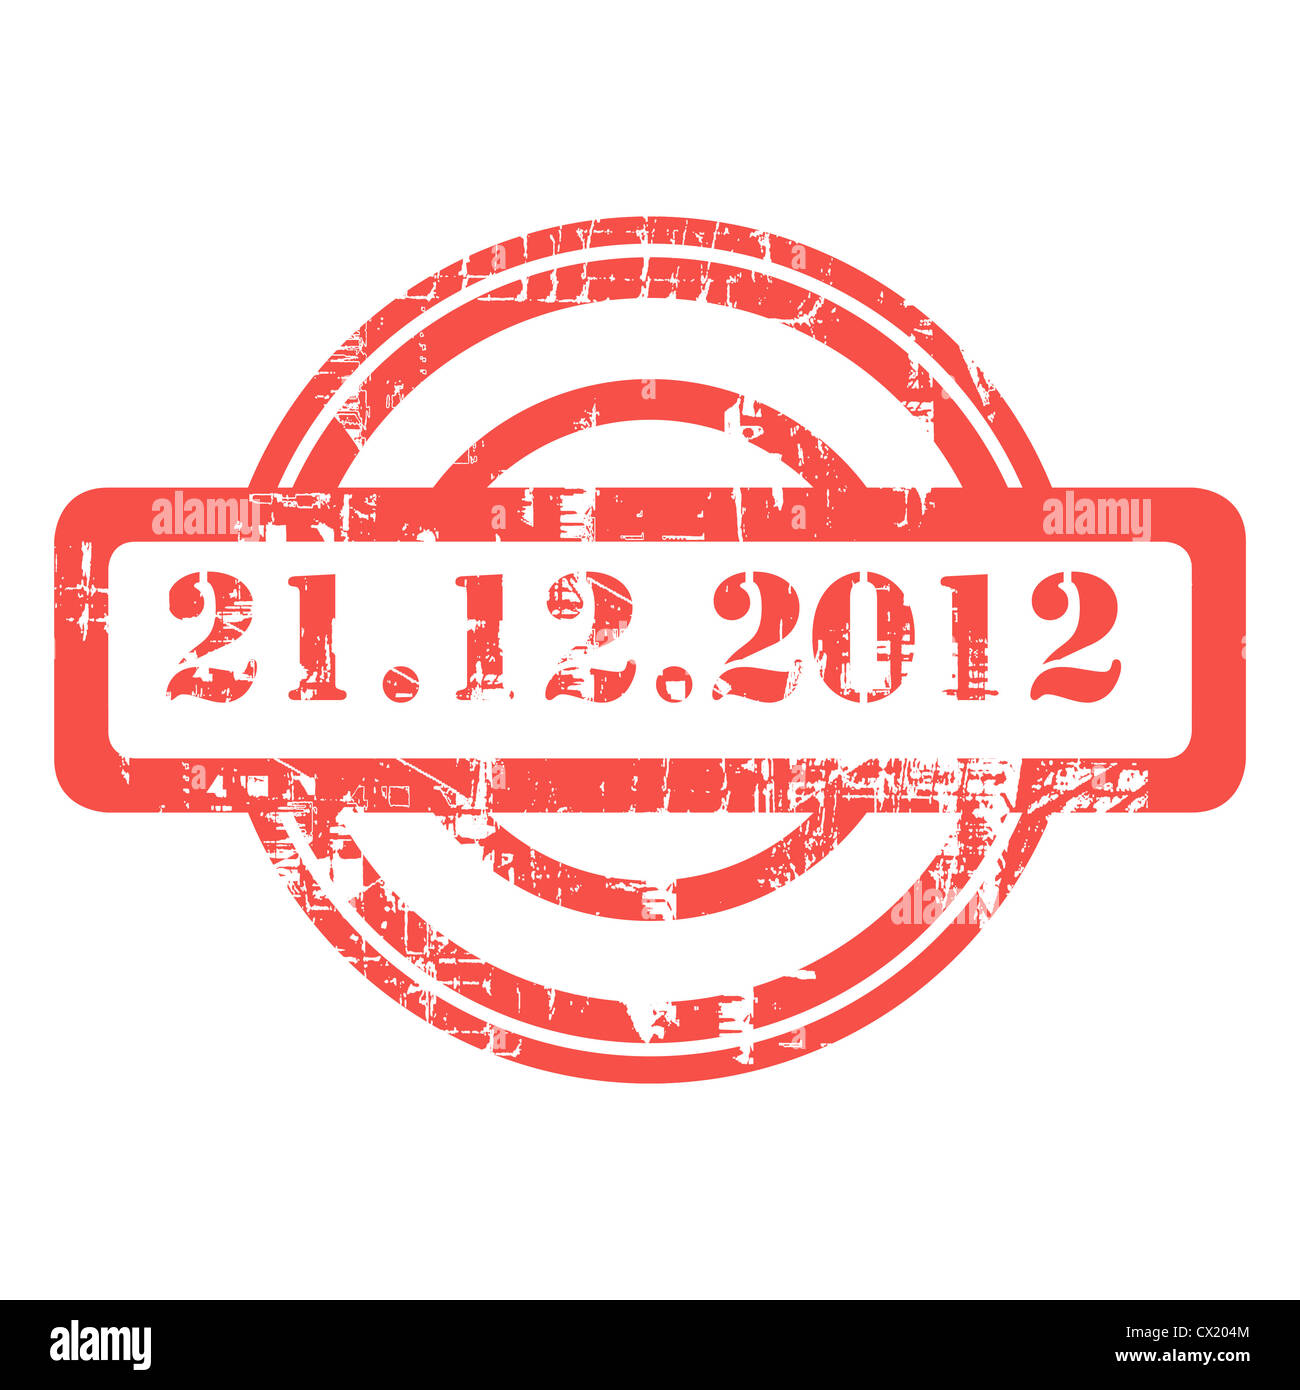 Prophétie maya, 21 décembre 2012, utilisé red grunge stamp isolé sur fond blanc. Banque D'Images